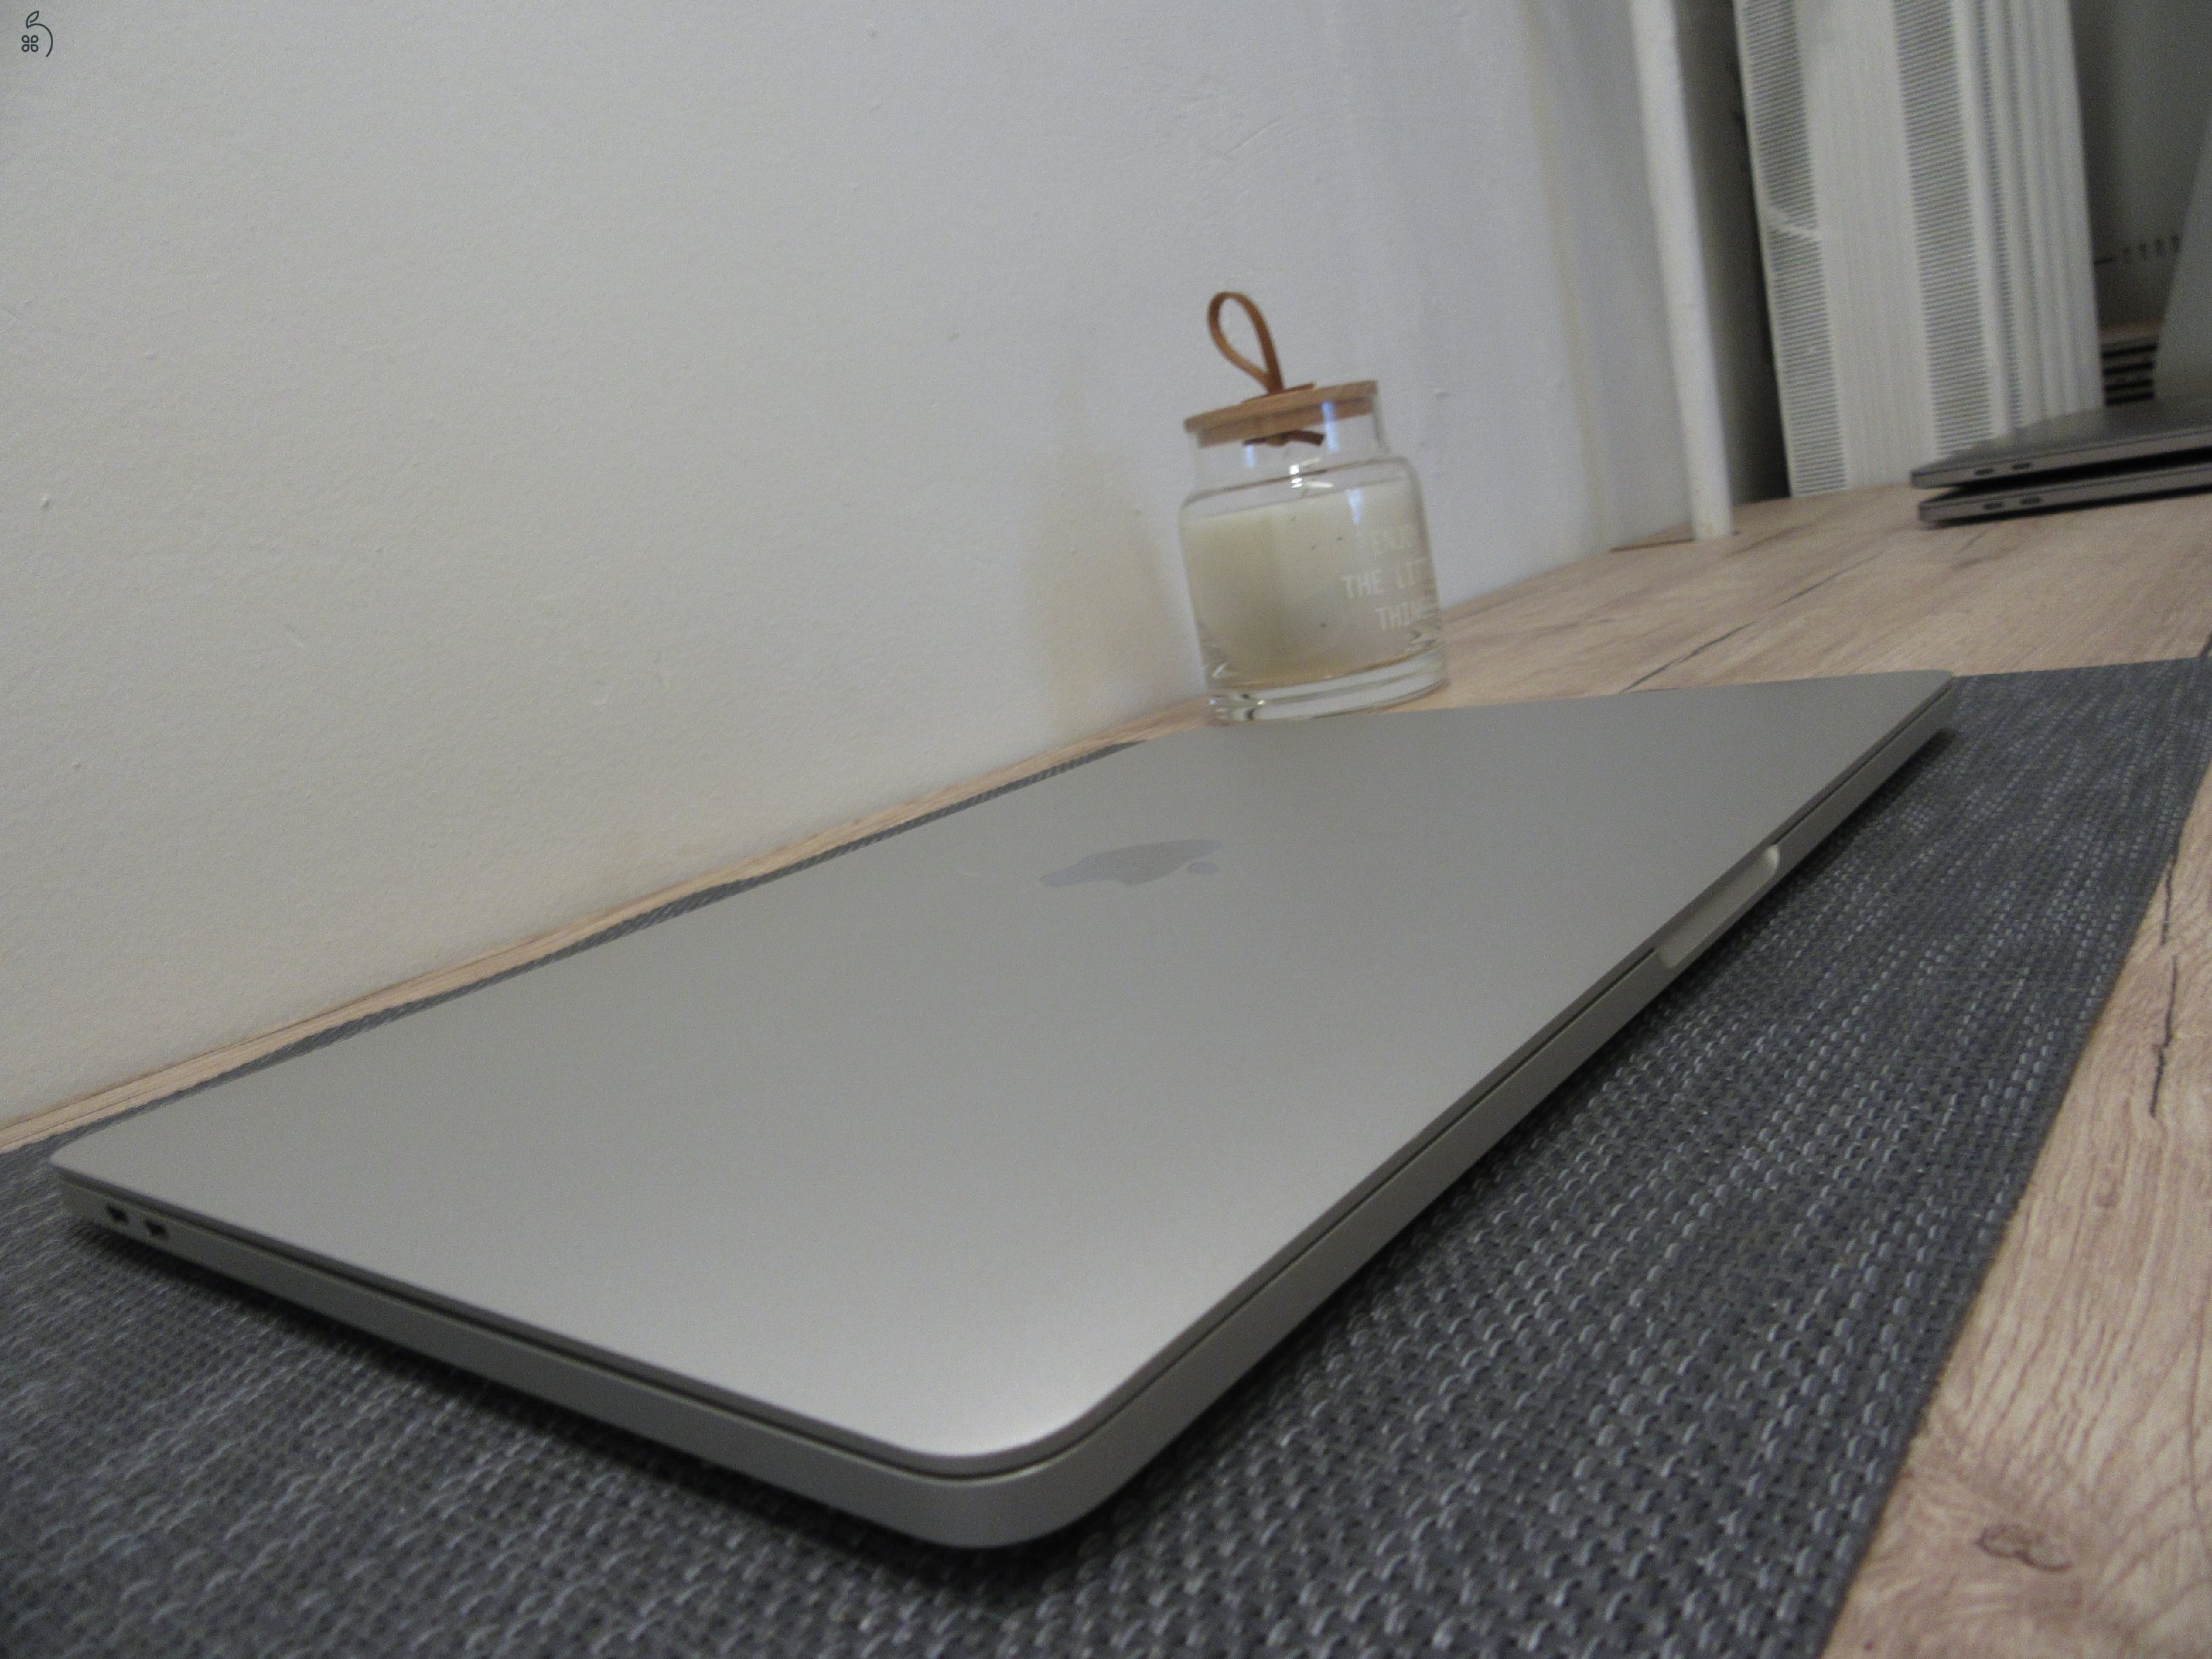 Apple Macbook Pro 13 Touch Bar - 2019 - Használt, újszerű